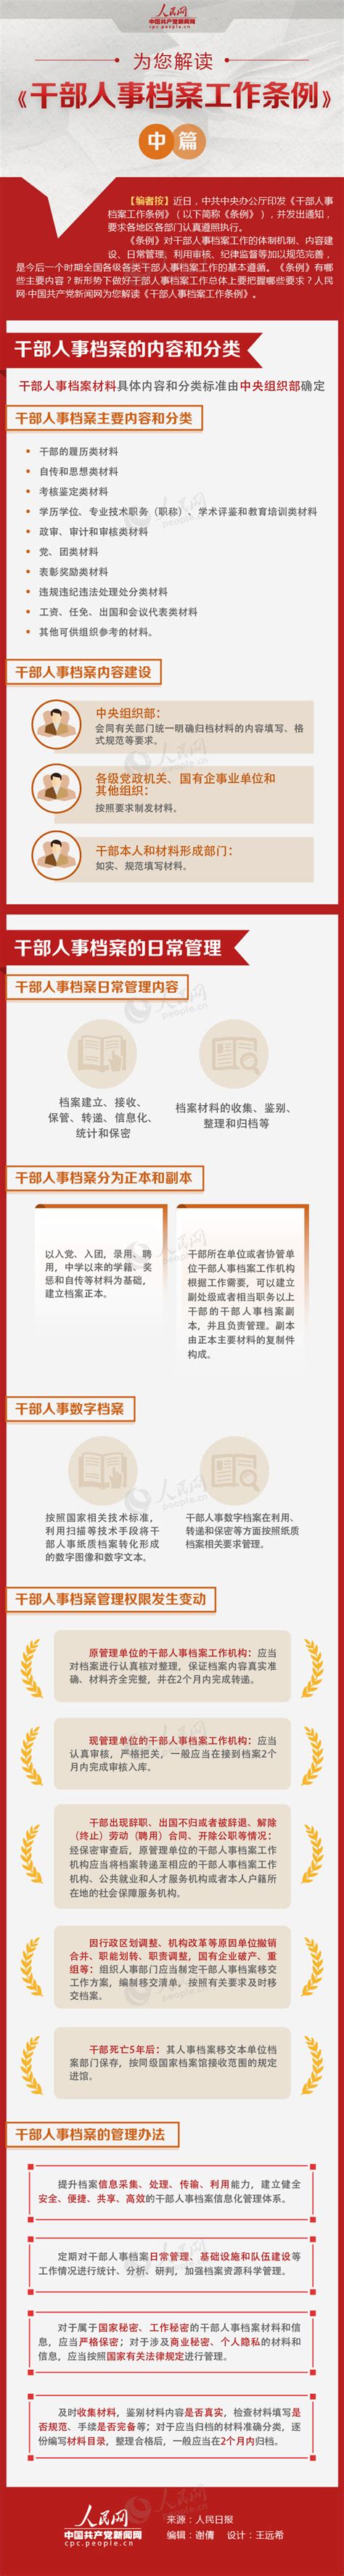 图解：为您解读《干部人事档案工作条例》中篇 - 周到上海